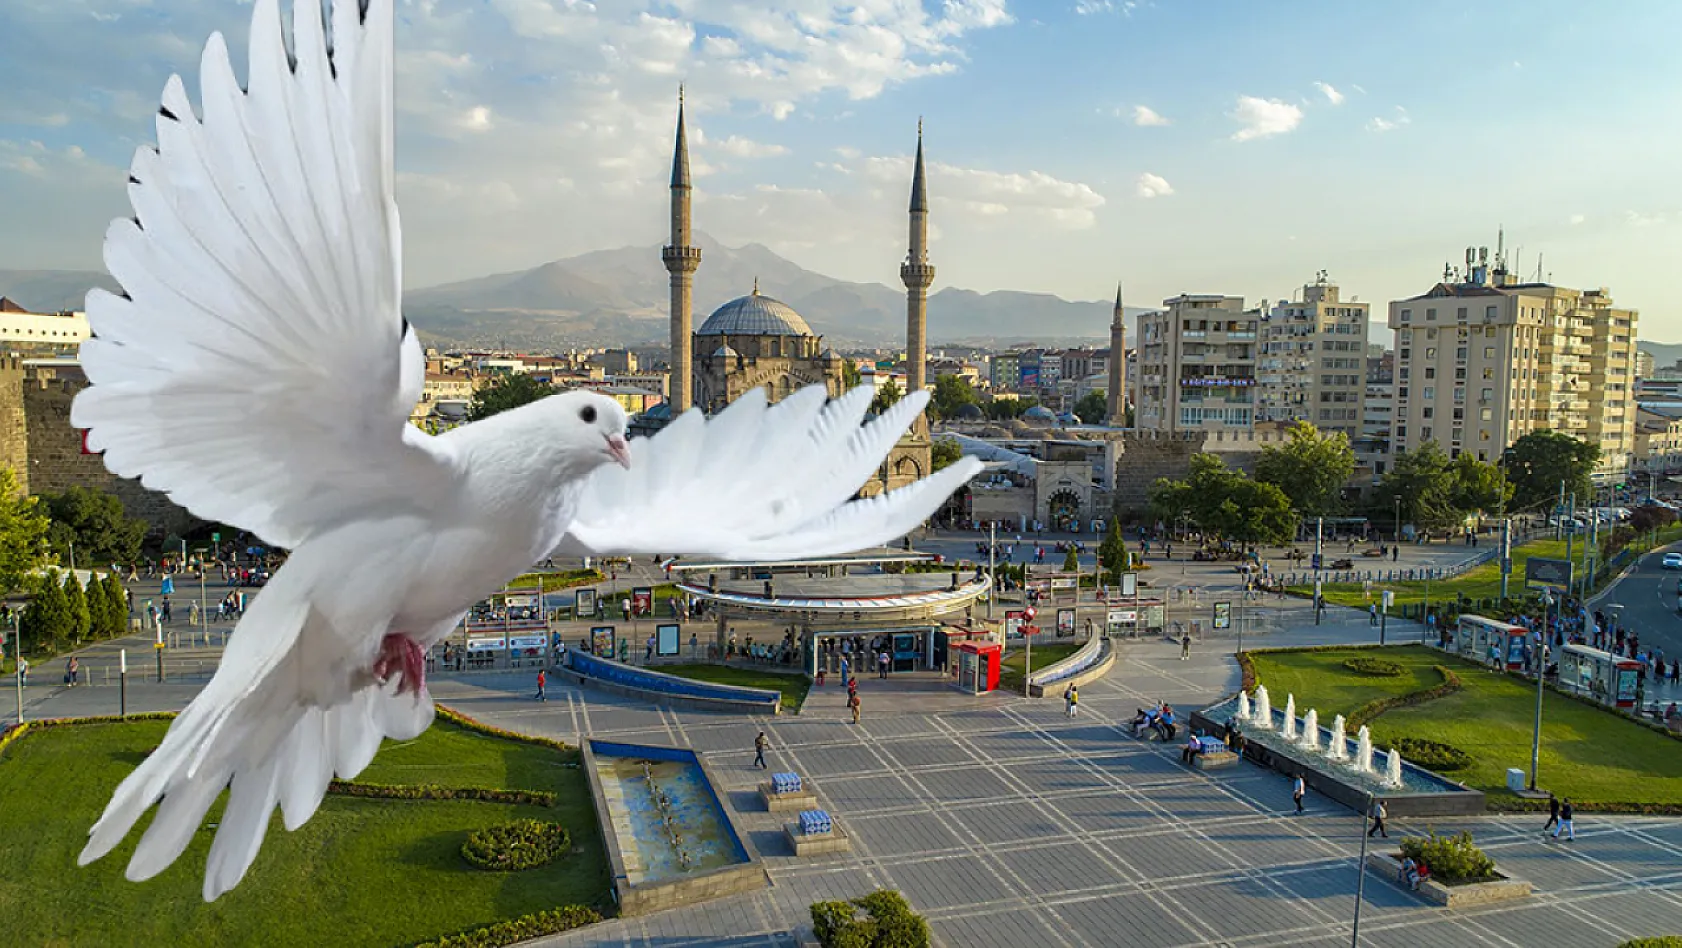 Kayseri, Konya, Şanlıurfa, Bursa ve Mersin'e talih kuşu kondu! 1 milyon TL geliyor, hem de geri ödemesiz